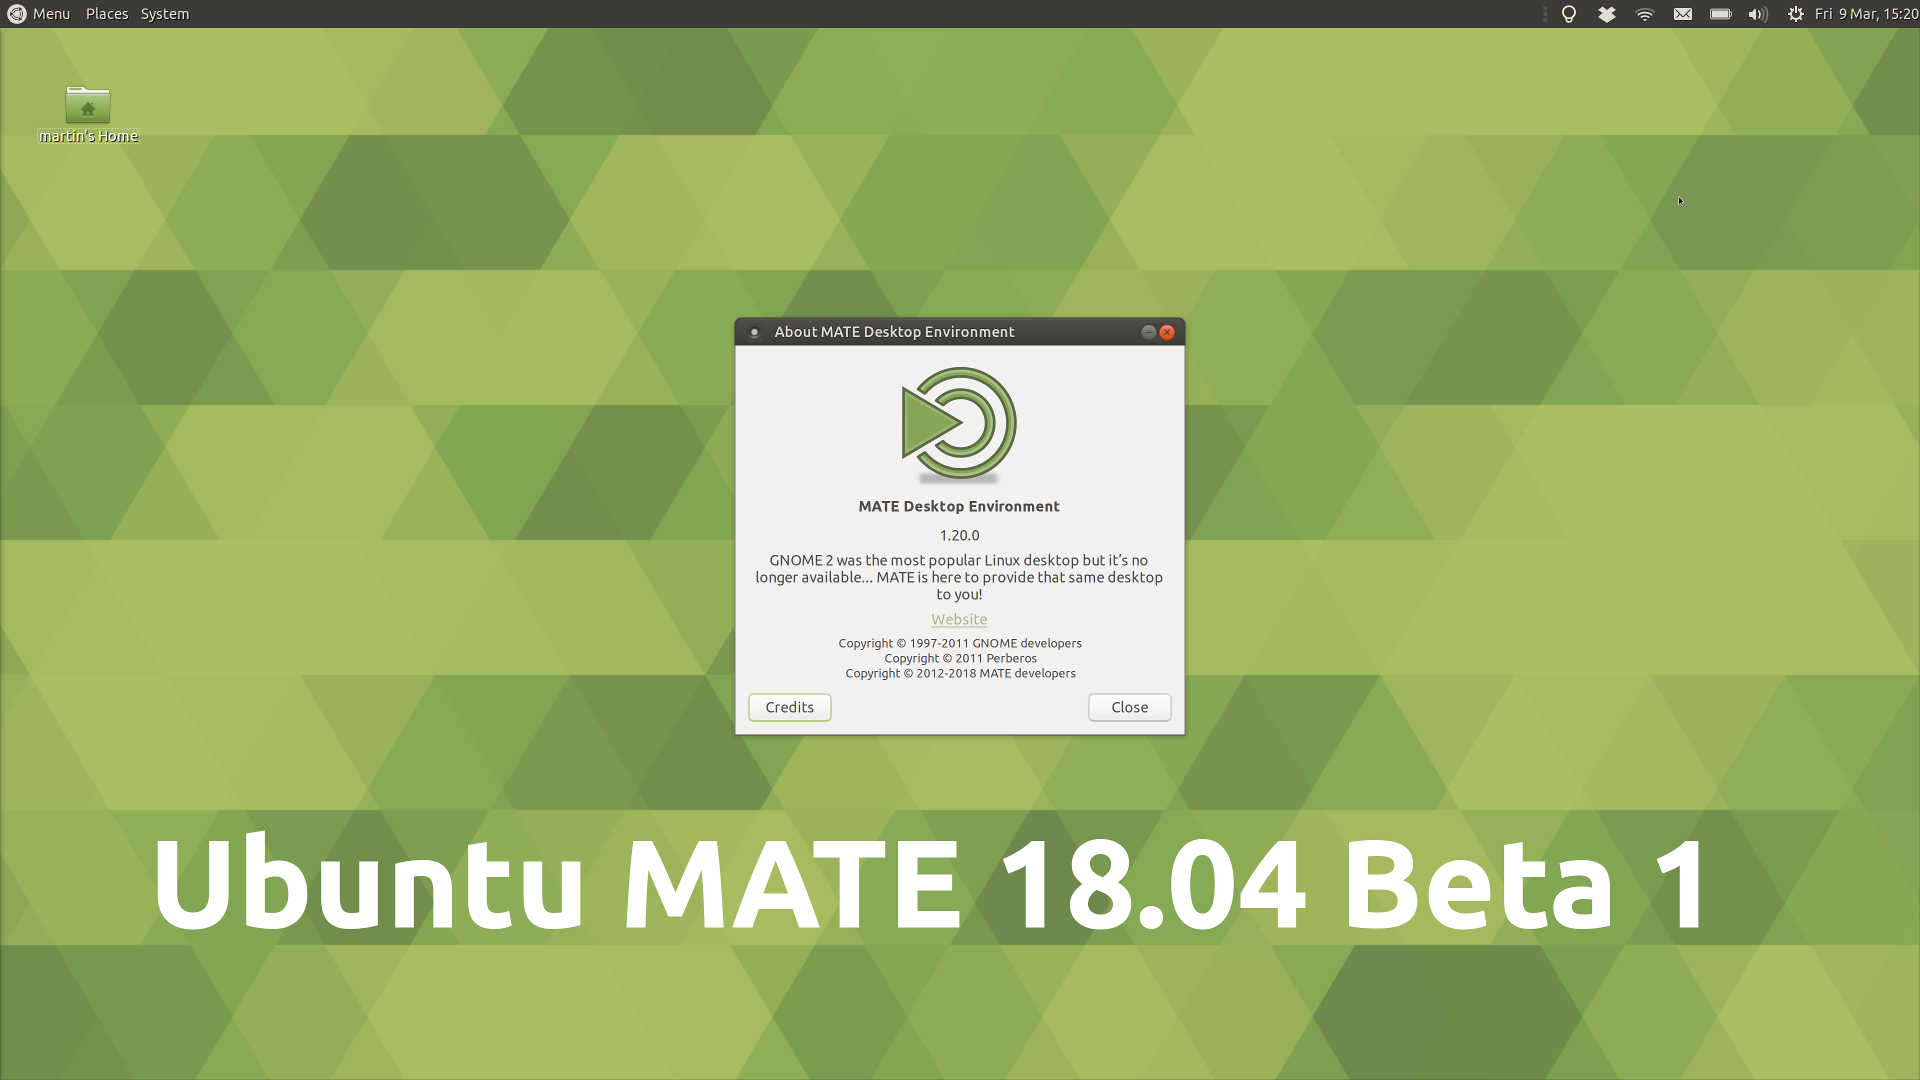 Ubuntu MATE 18.04 Beta 1